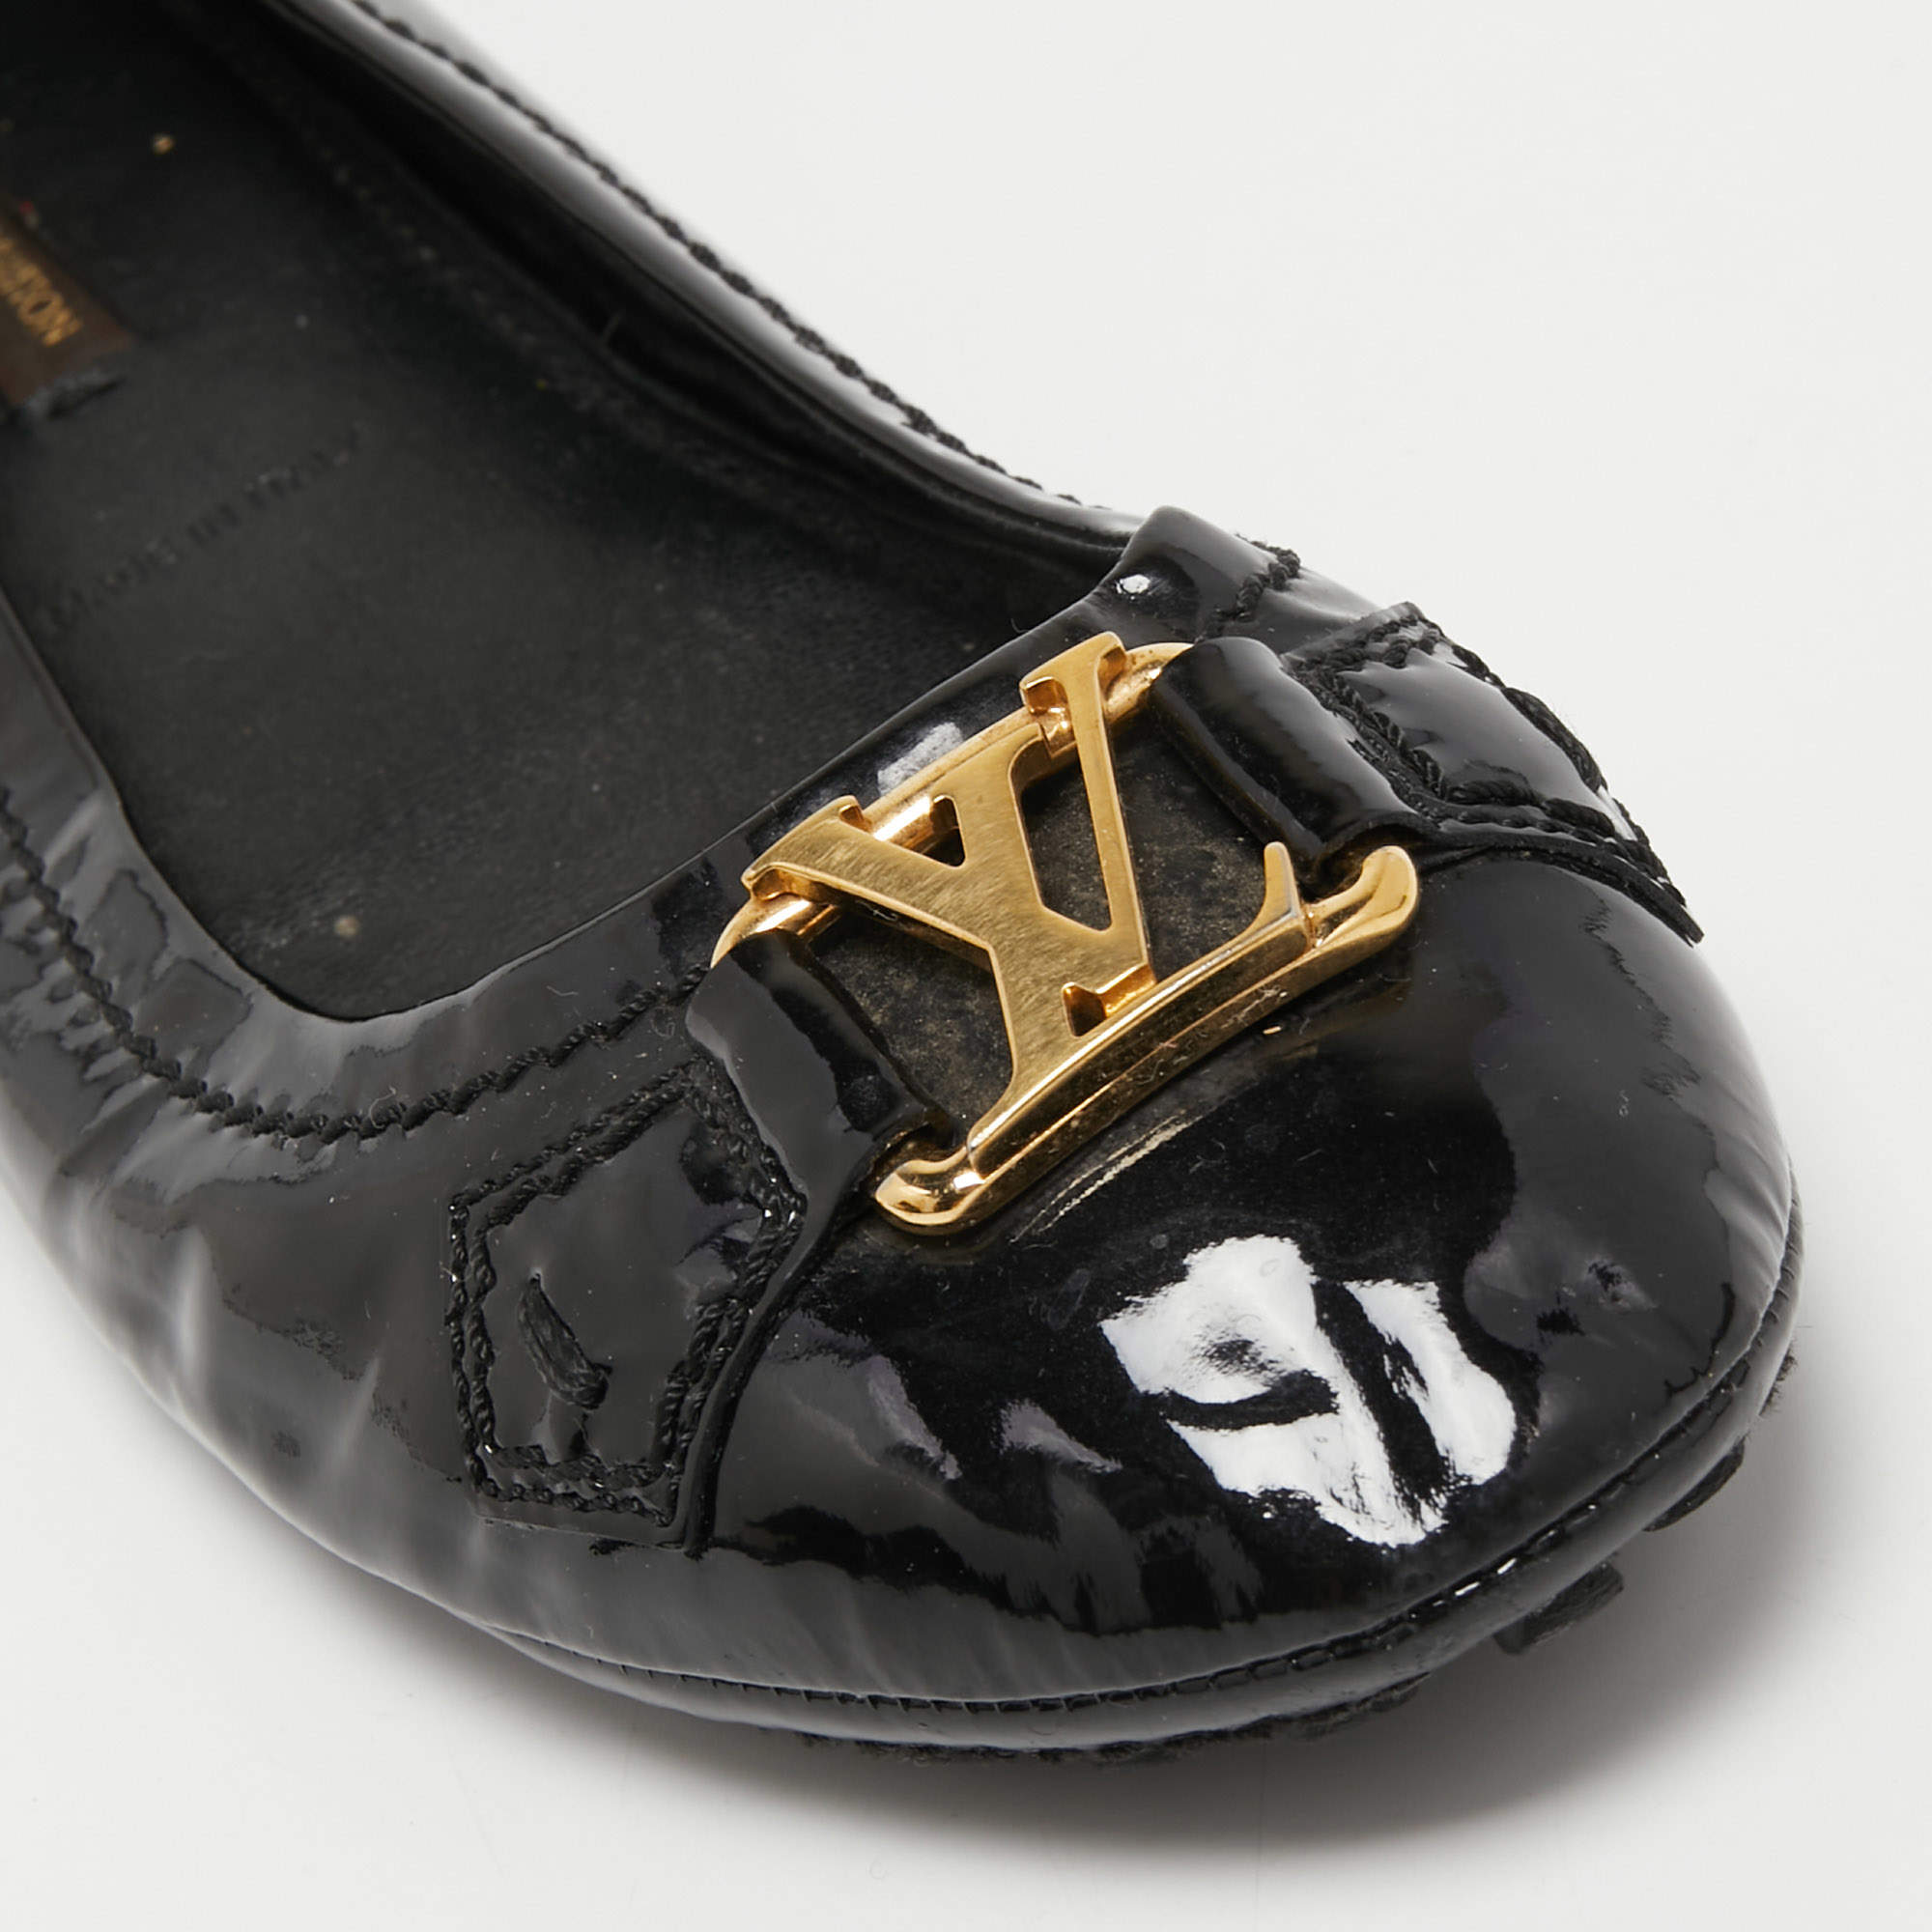 Louis Vuitton, Shoes, Louis Vuitton Uniformes Black Patent Leather  Ballerina Flats Shoes Sz 377